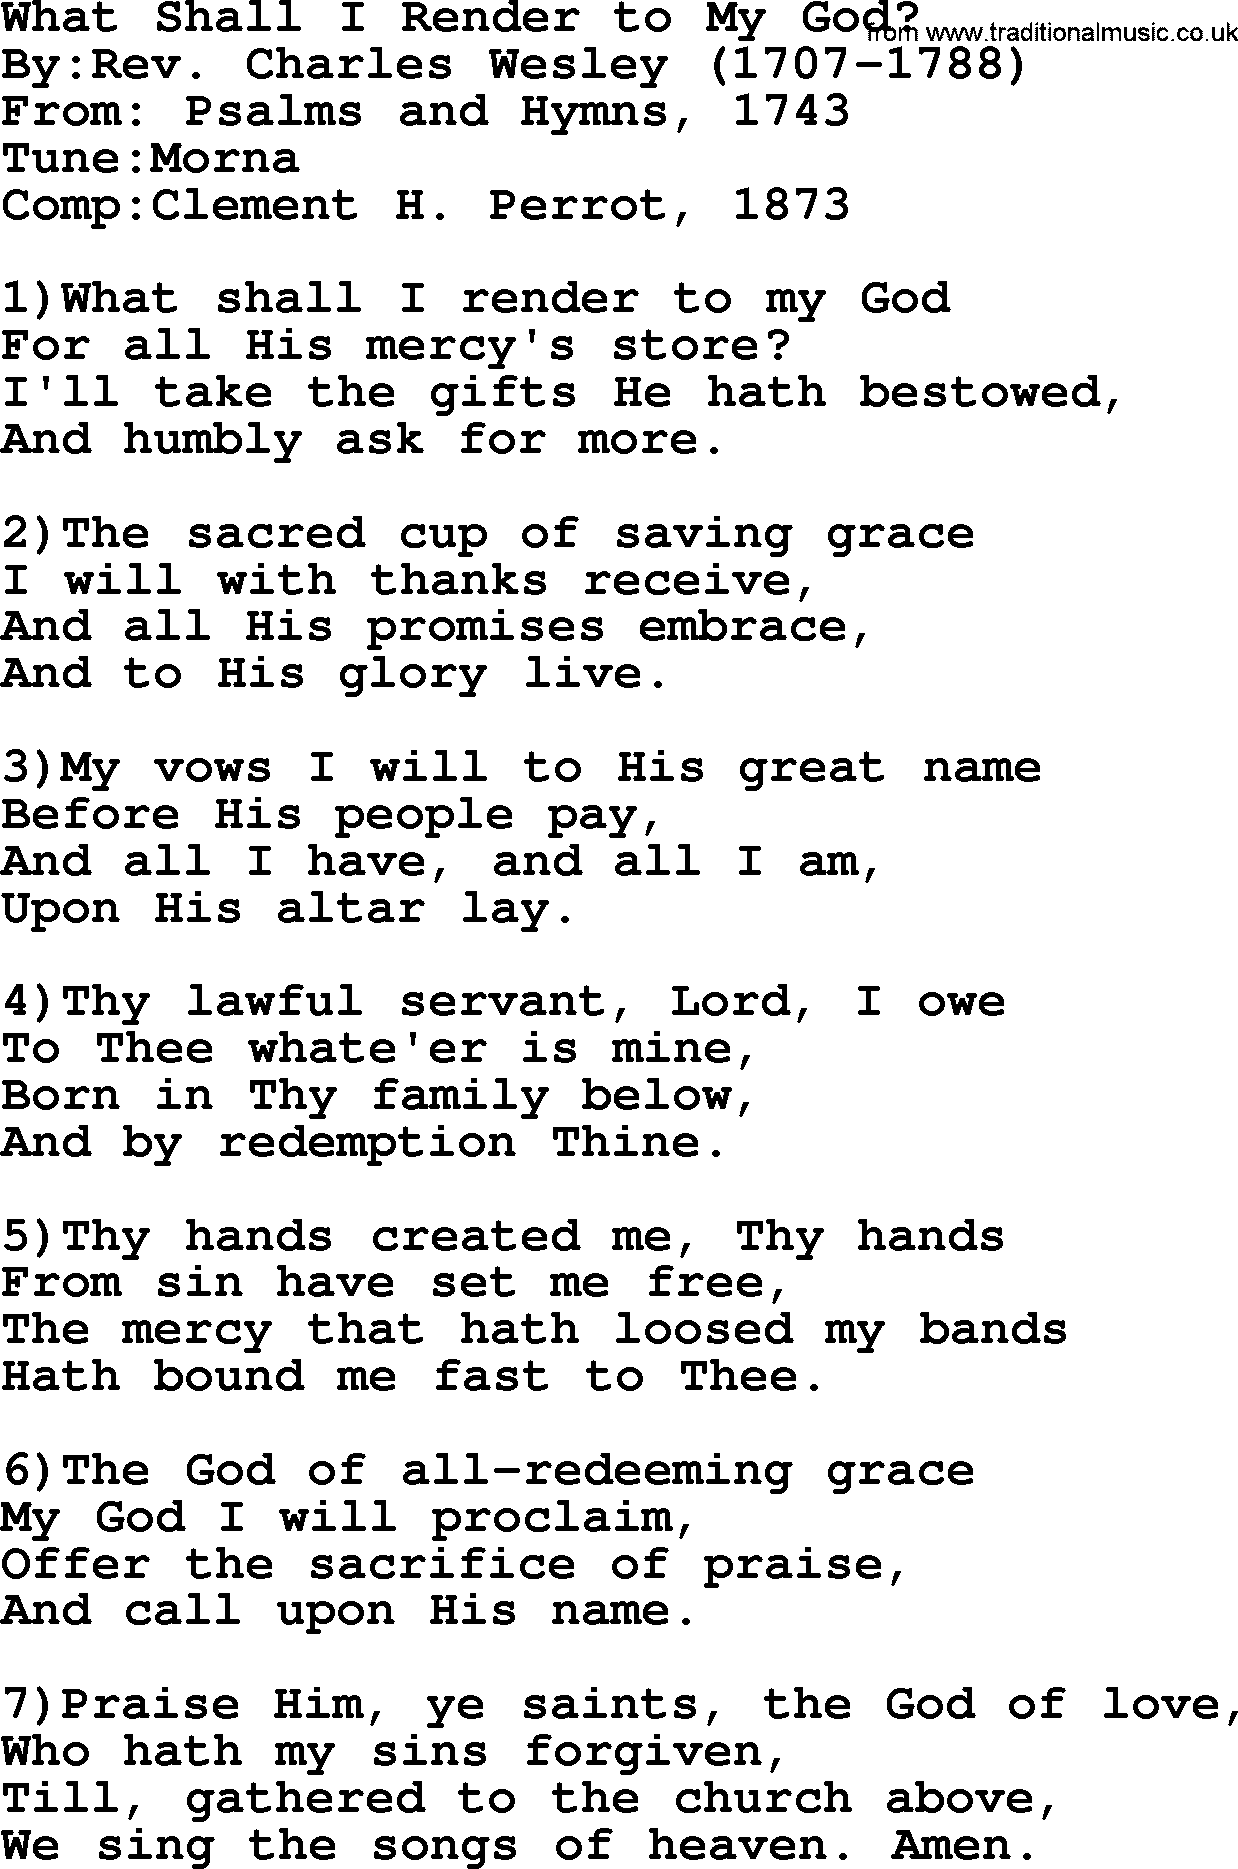 Methodist Hymn: What Shall I Render To My God, lyrics